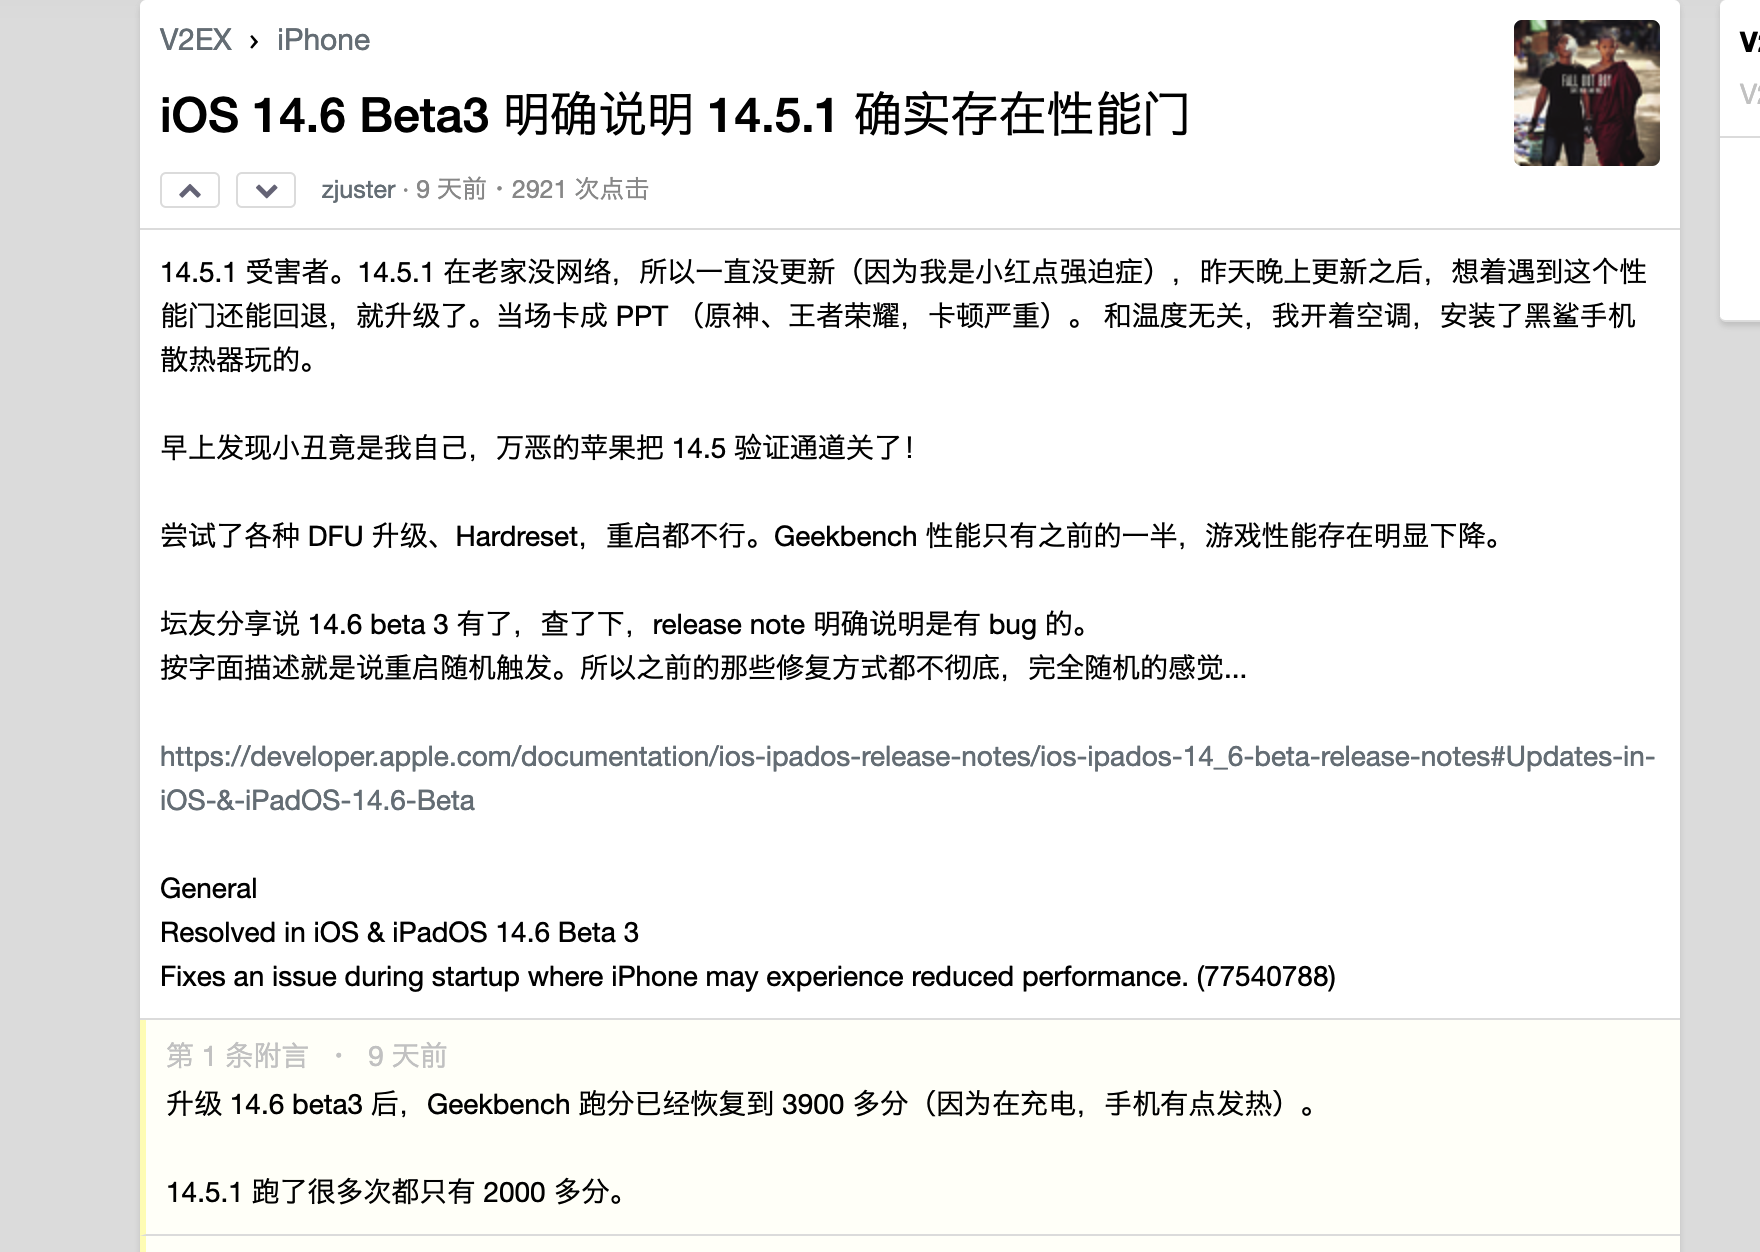 iShot2021 05 23 17.01.21 - iOS 14.5.1 appare “riduzione della frequenza casuale”, l’aggiornamento del firmware potrebbe essere una “spada a doppio taglio”